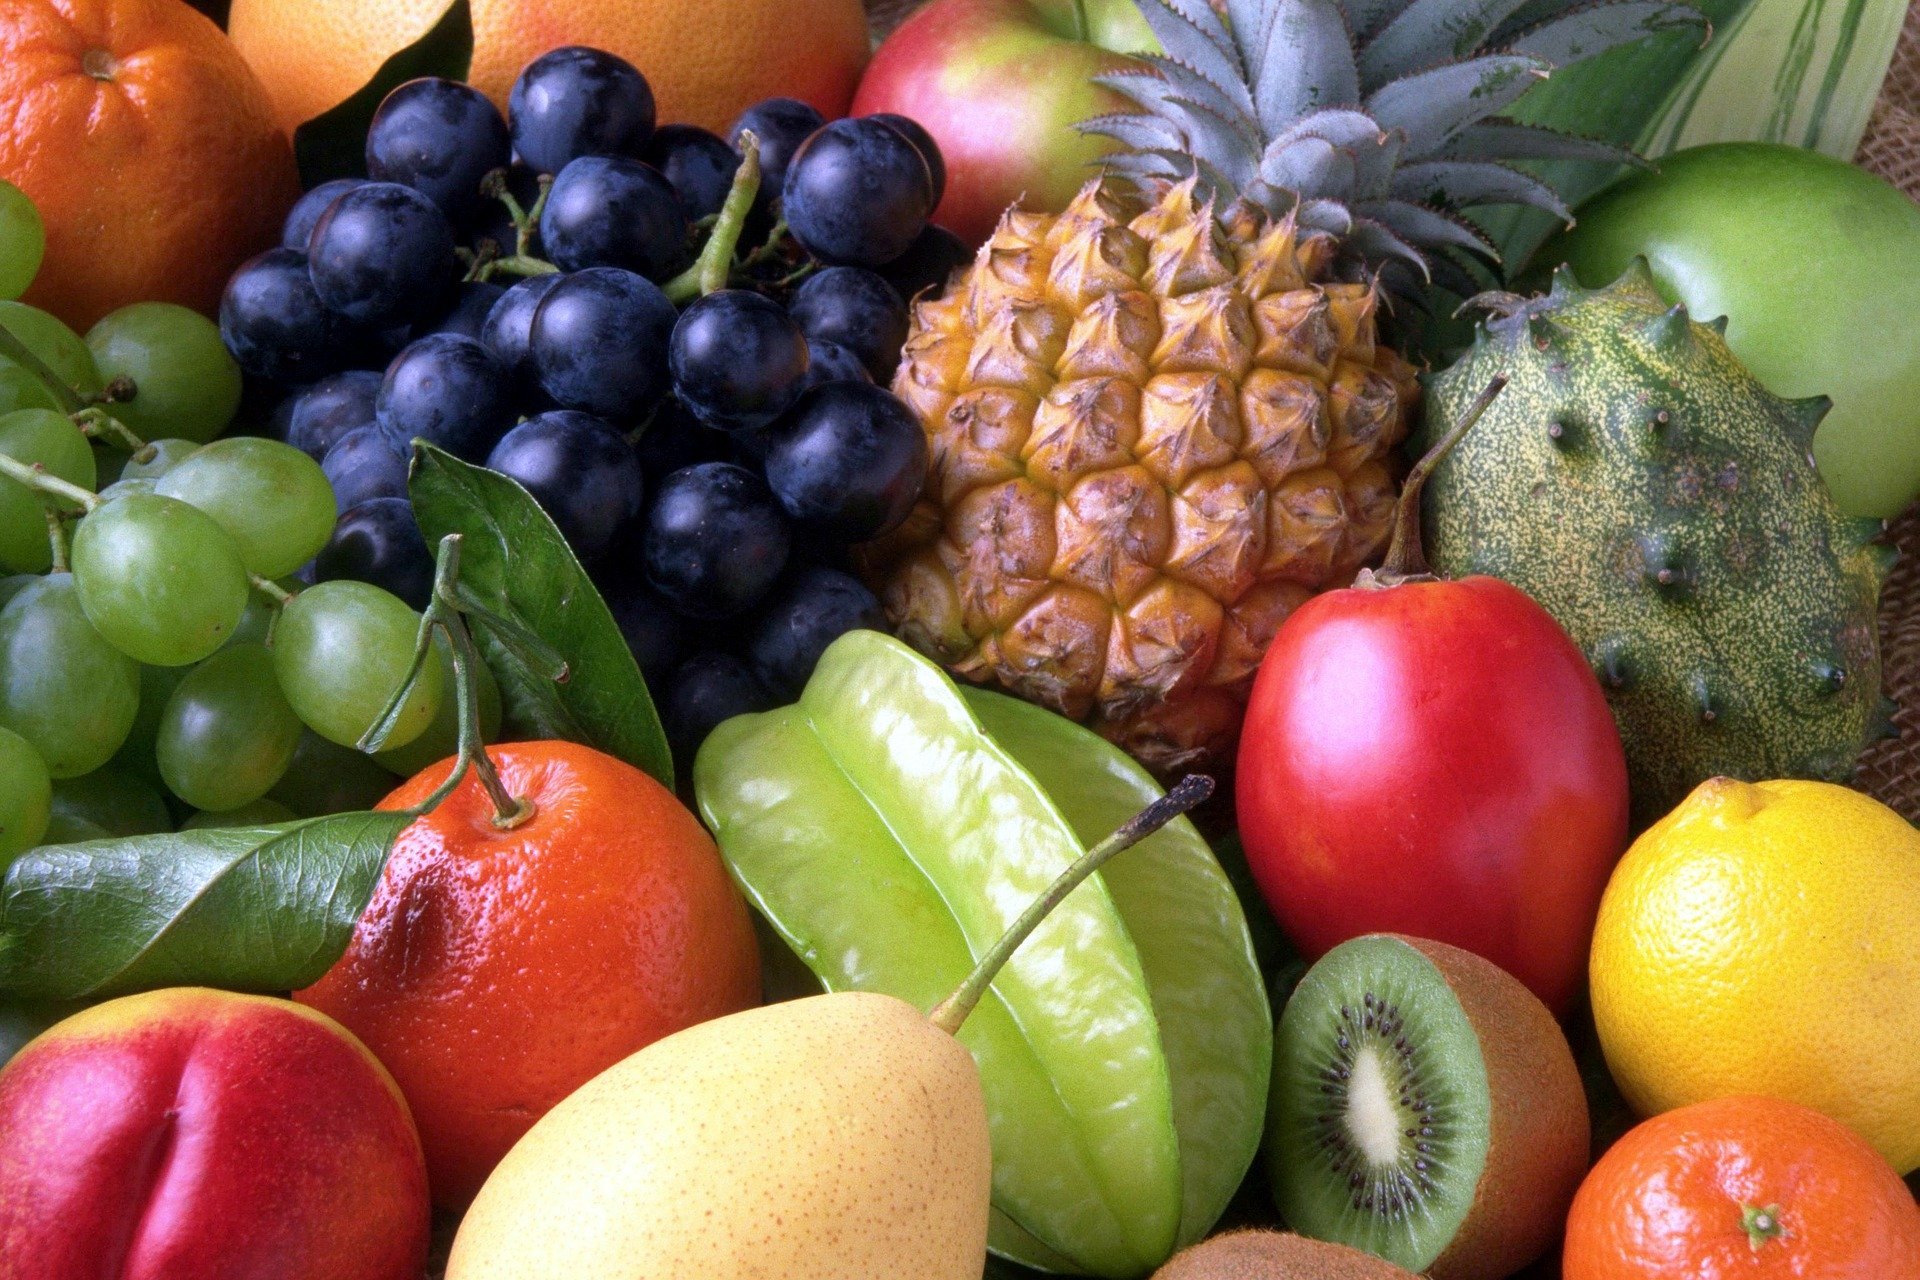 Описание вкуса фруктов. Цитрус мевалар. Экзотические фрукты. Овощи, фрукты, ягоды. Разные фрукты и овощи.